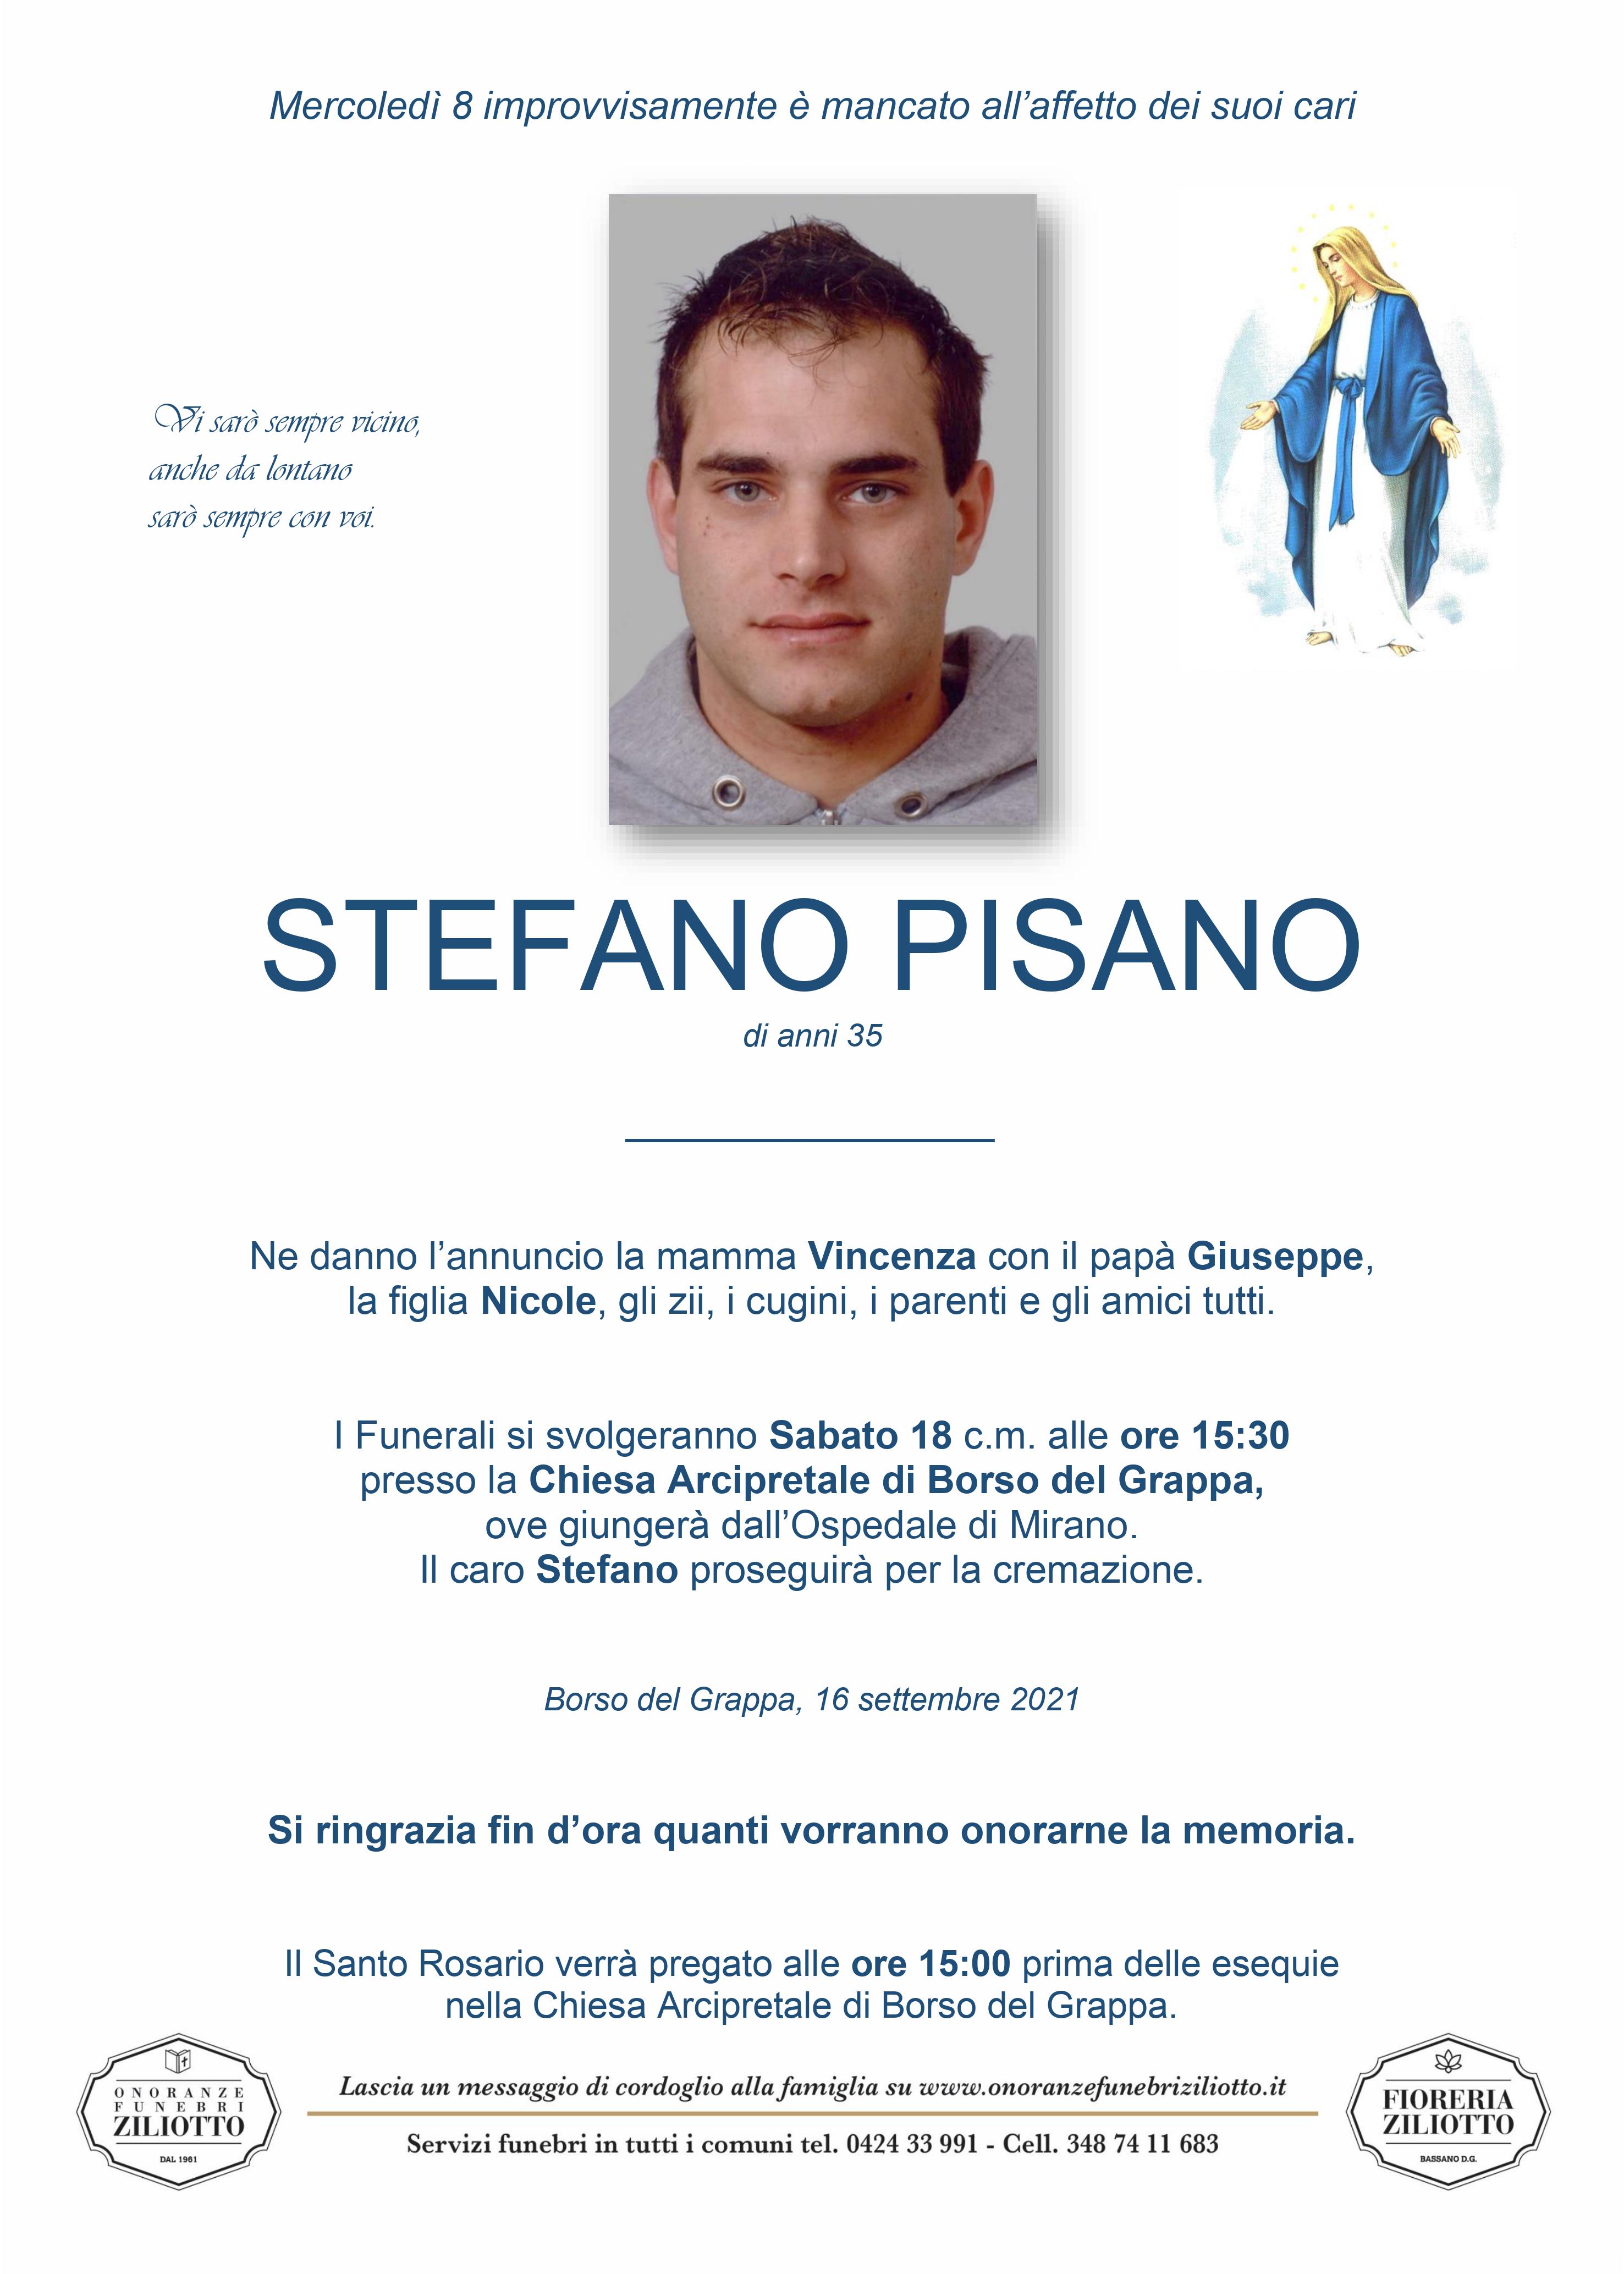 Stefano Pisano - 35 anni - Borso del Grappa